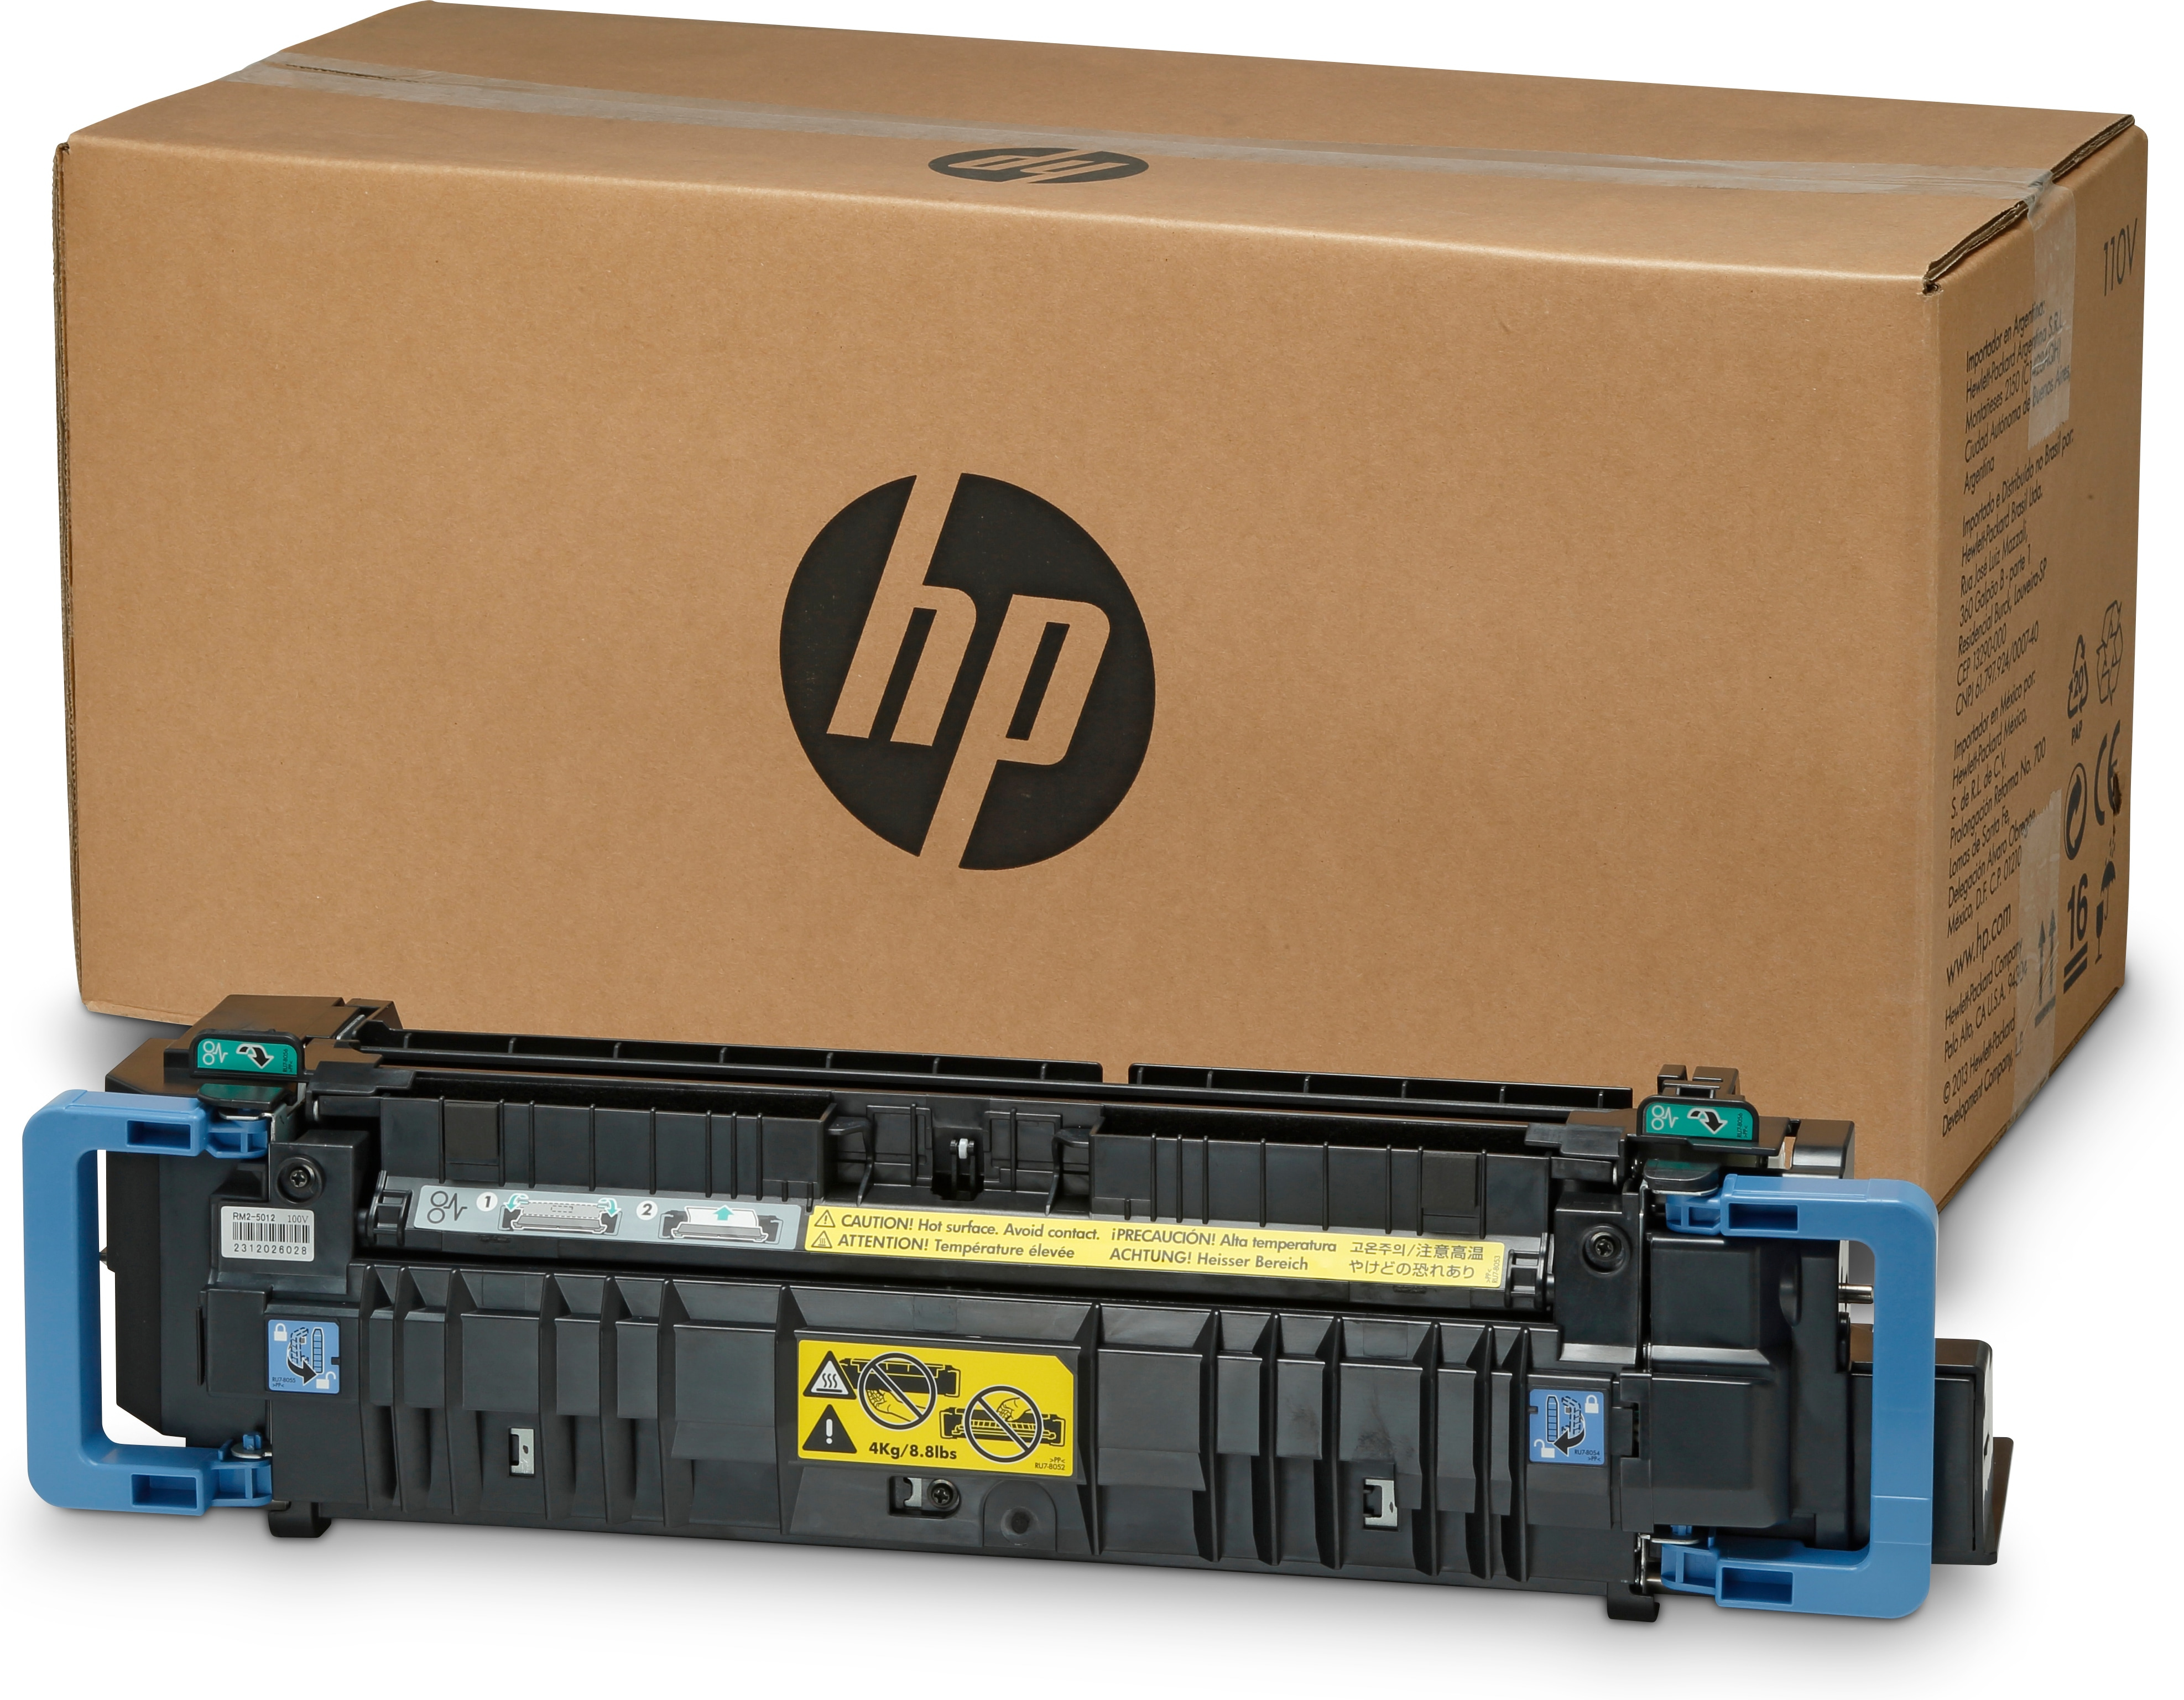 HP 220-volt User Maintenance Kit - (220 V) - Wartung der Druckerfixiereinheit